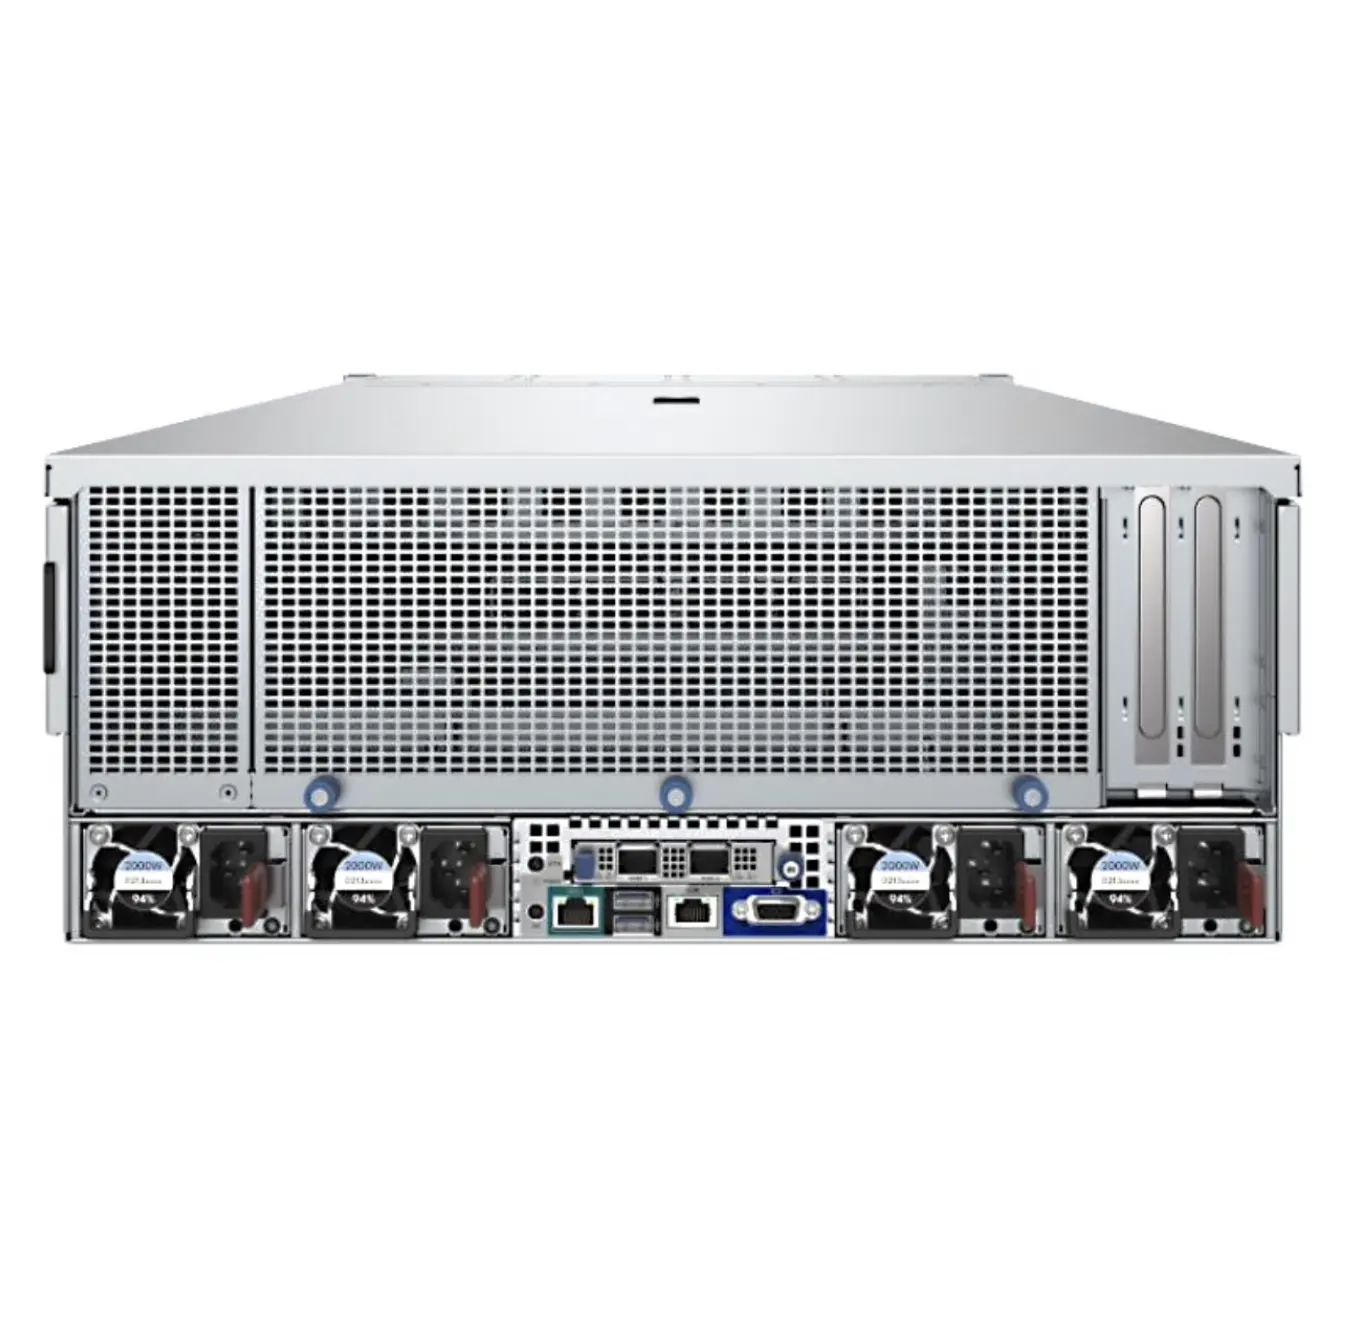 Dernier modèle H3C UniServer R5300 G5 4U Rack Server GPU Server R5300G5 2016 serveur iptv serveur WINDOW 2019 CPU GHU HUASAN